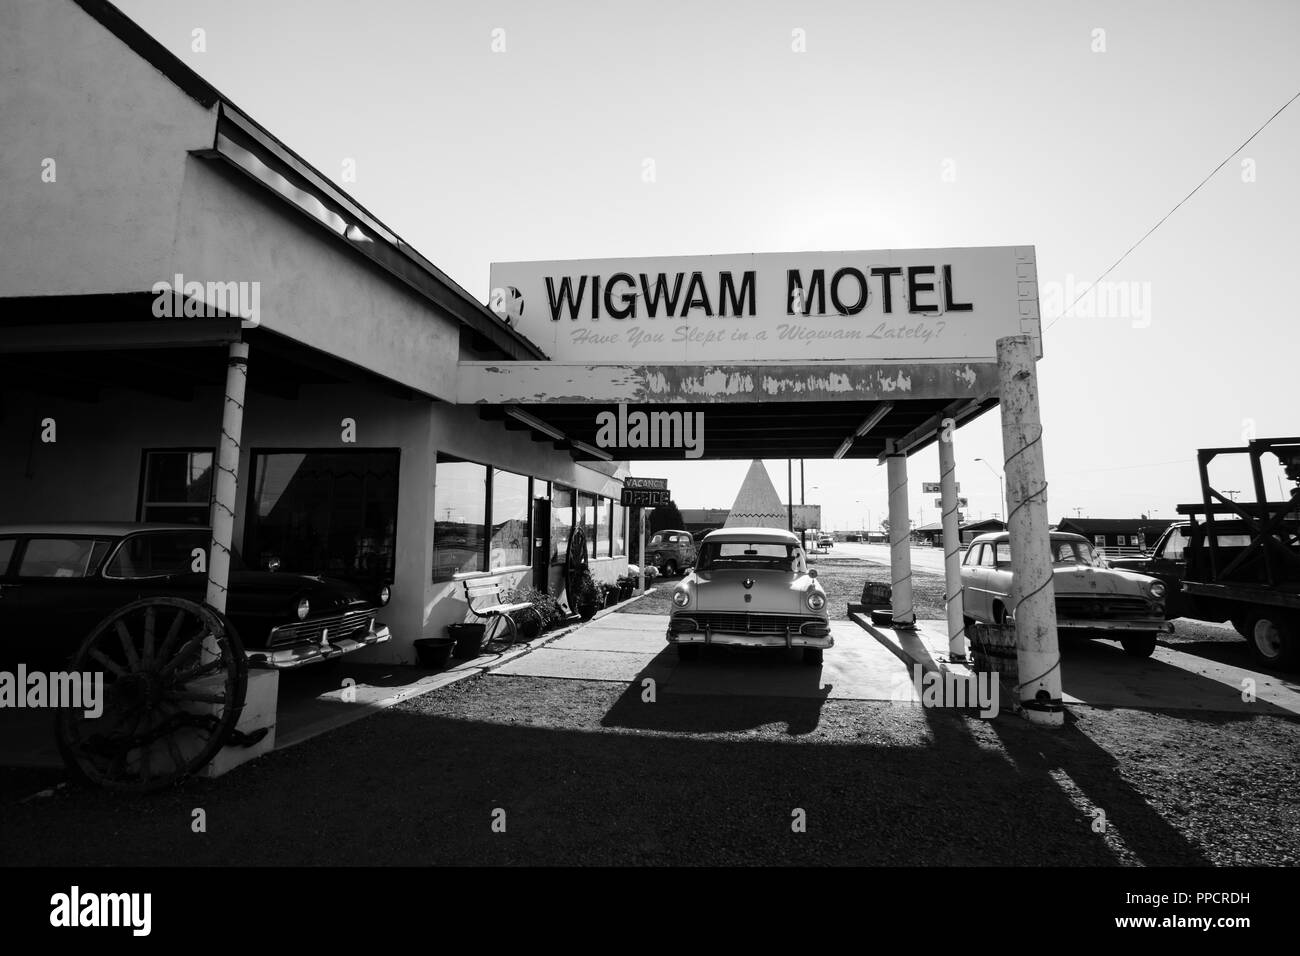 La famosa Route 66 punto di riferimento - il Wigwam Motel offre agli ospiti di dormire in una concreta struttura wigwam. Auto d'epoca aggiungere al fascino nostalgico. Foto Stock